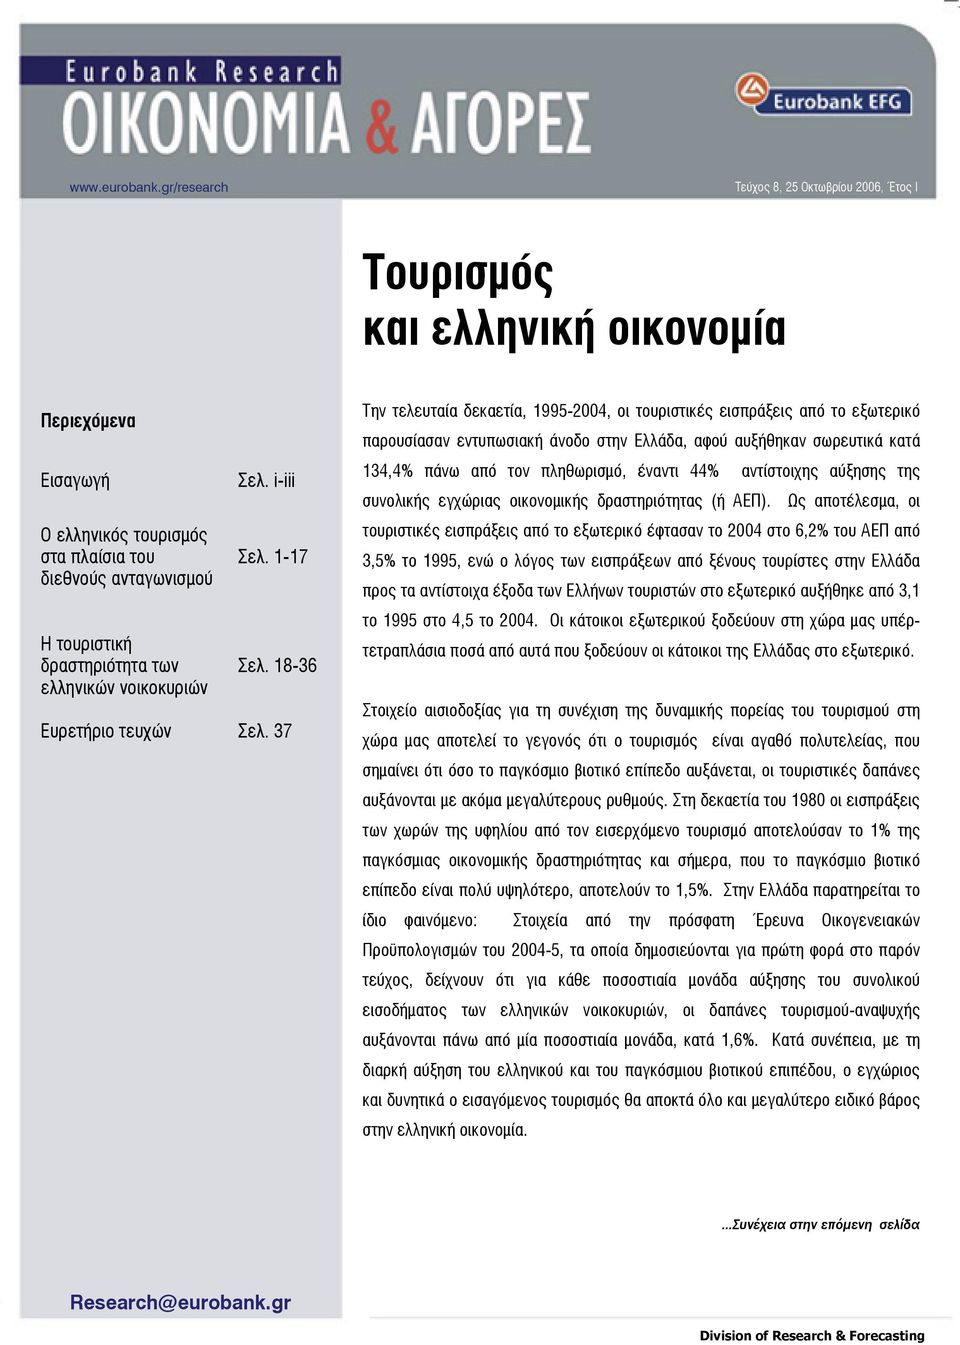 ελληνικών νοικοκυριών Σελ. i-iii Σελ. 1-17 Σελ. 18-36 Ευρετήριο τευχών Σελ.